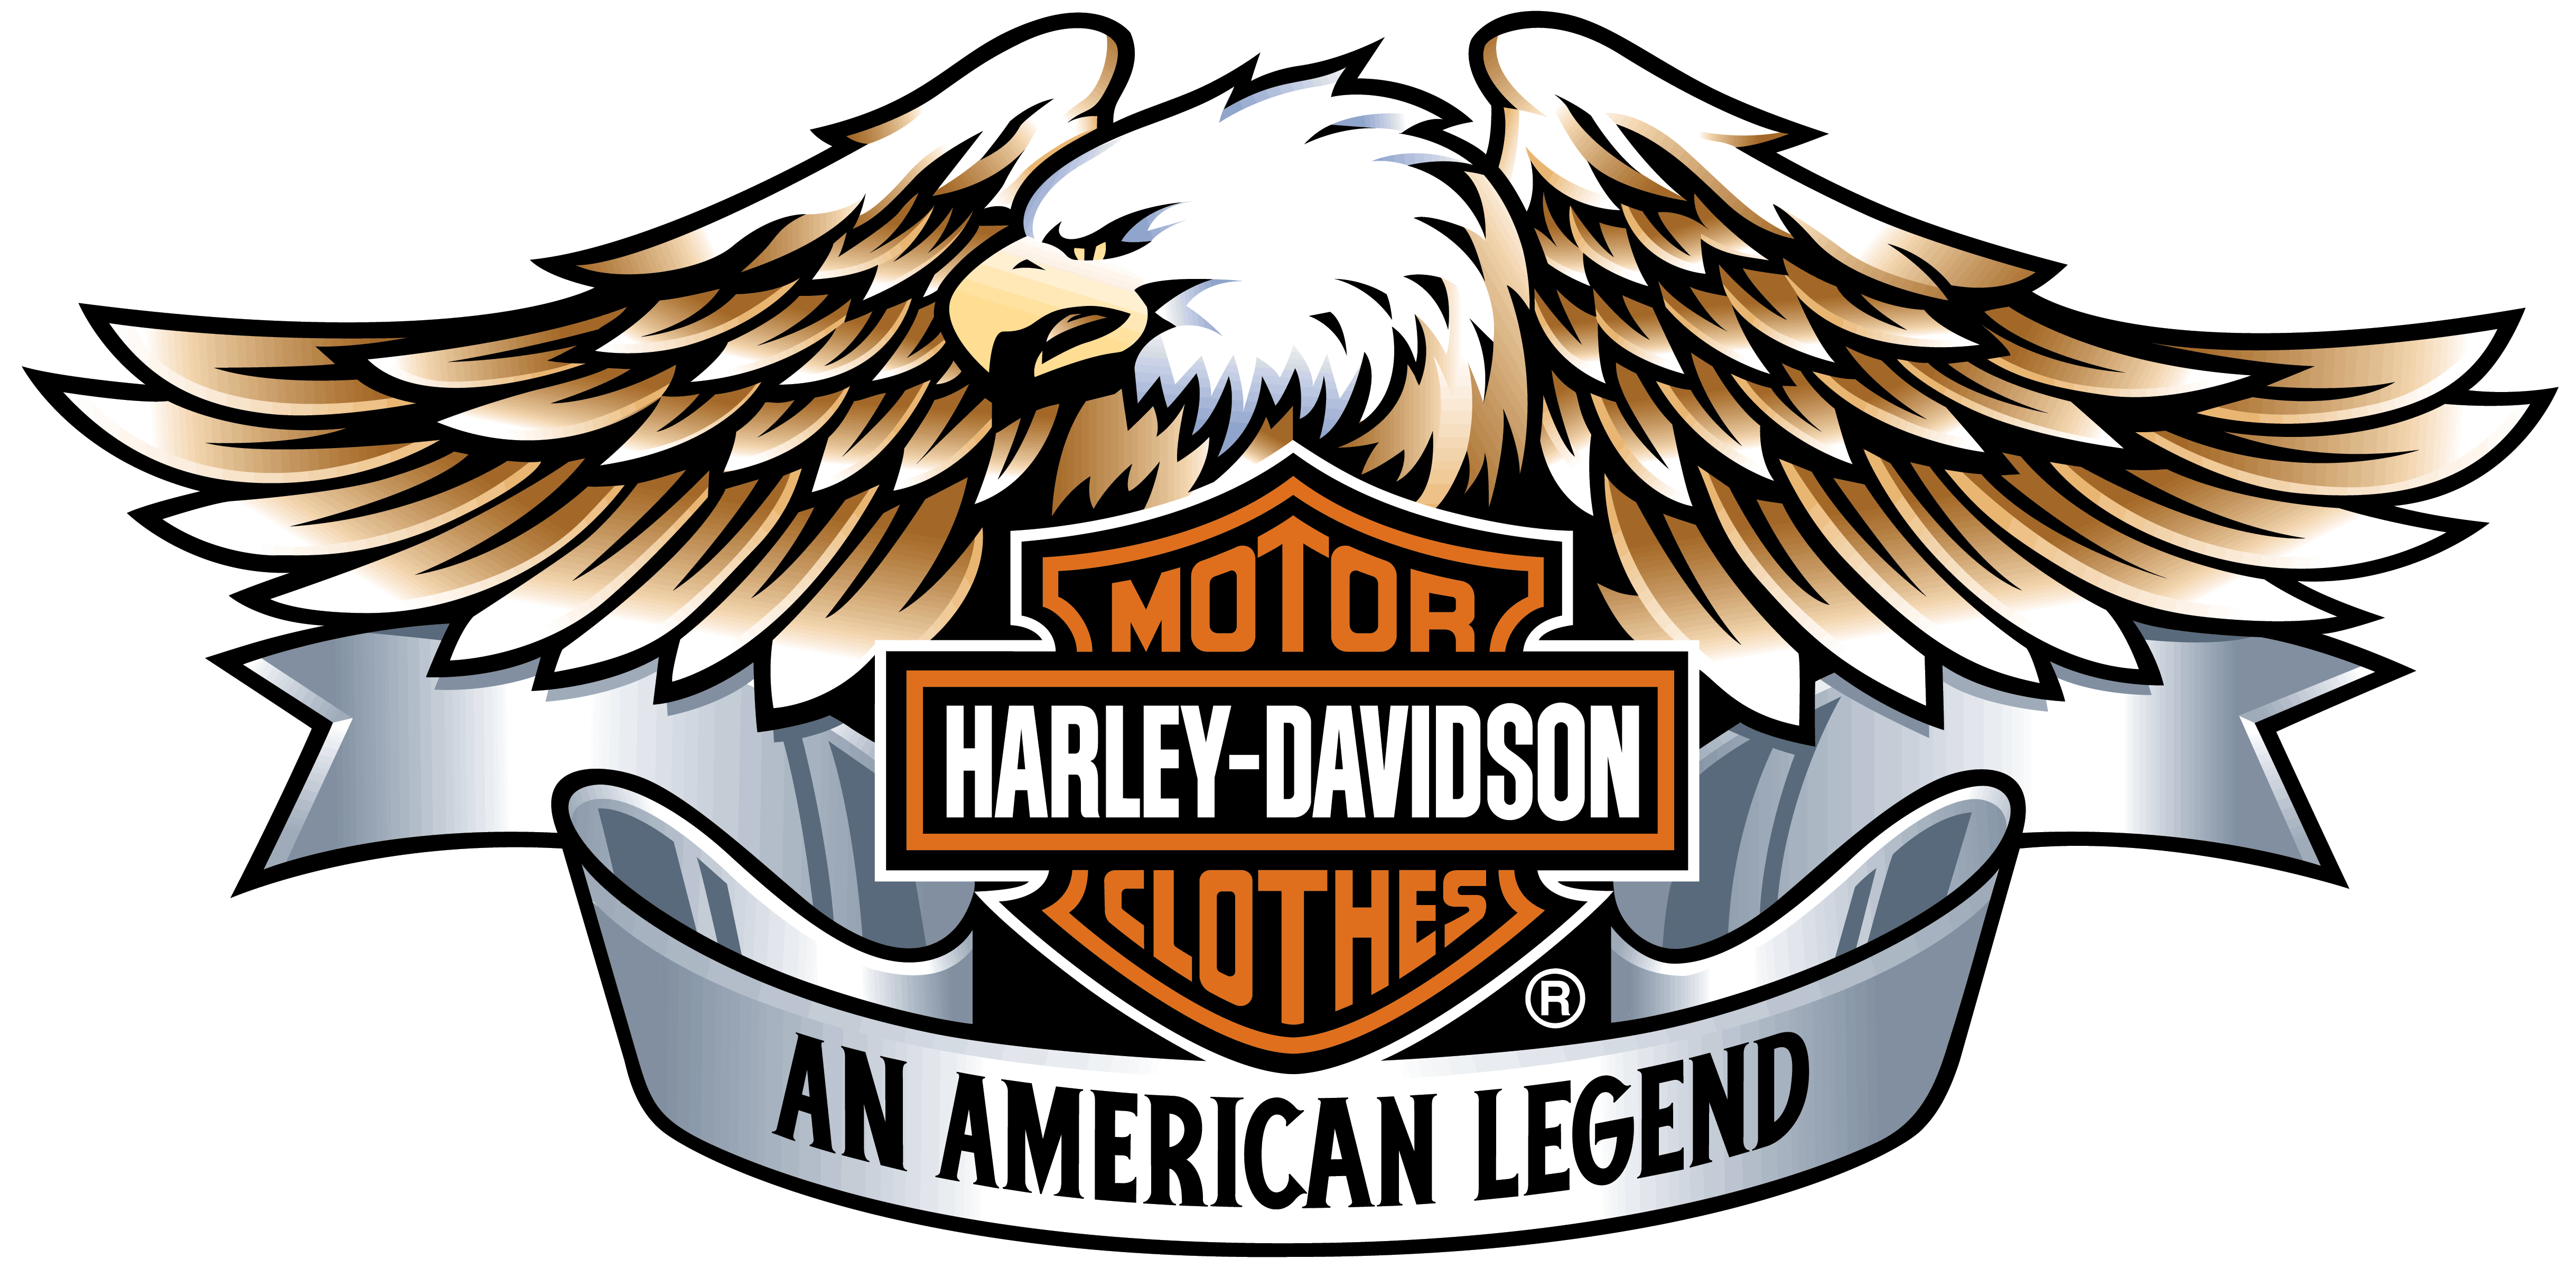 Harley-Davidson Trademark Infringement